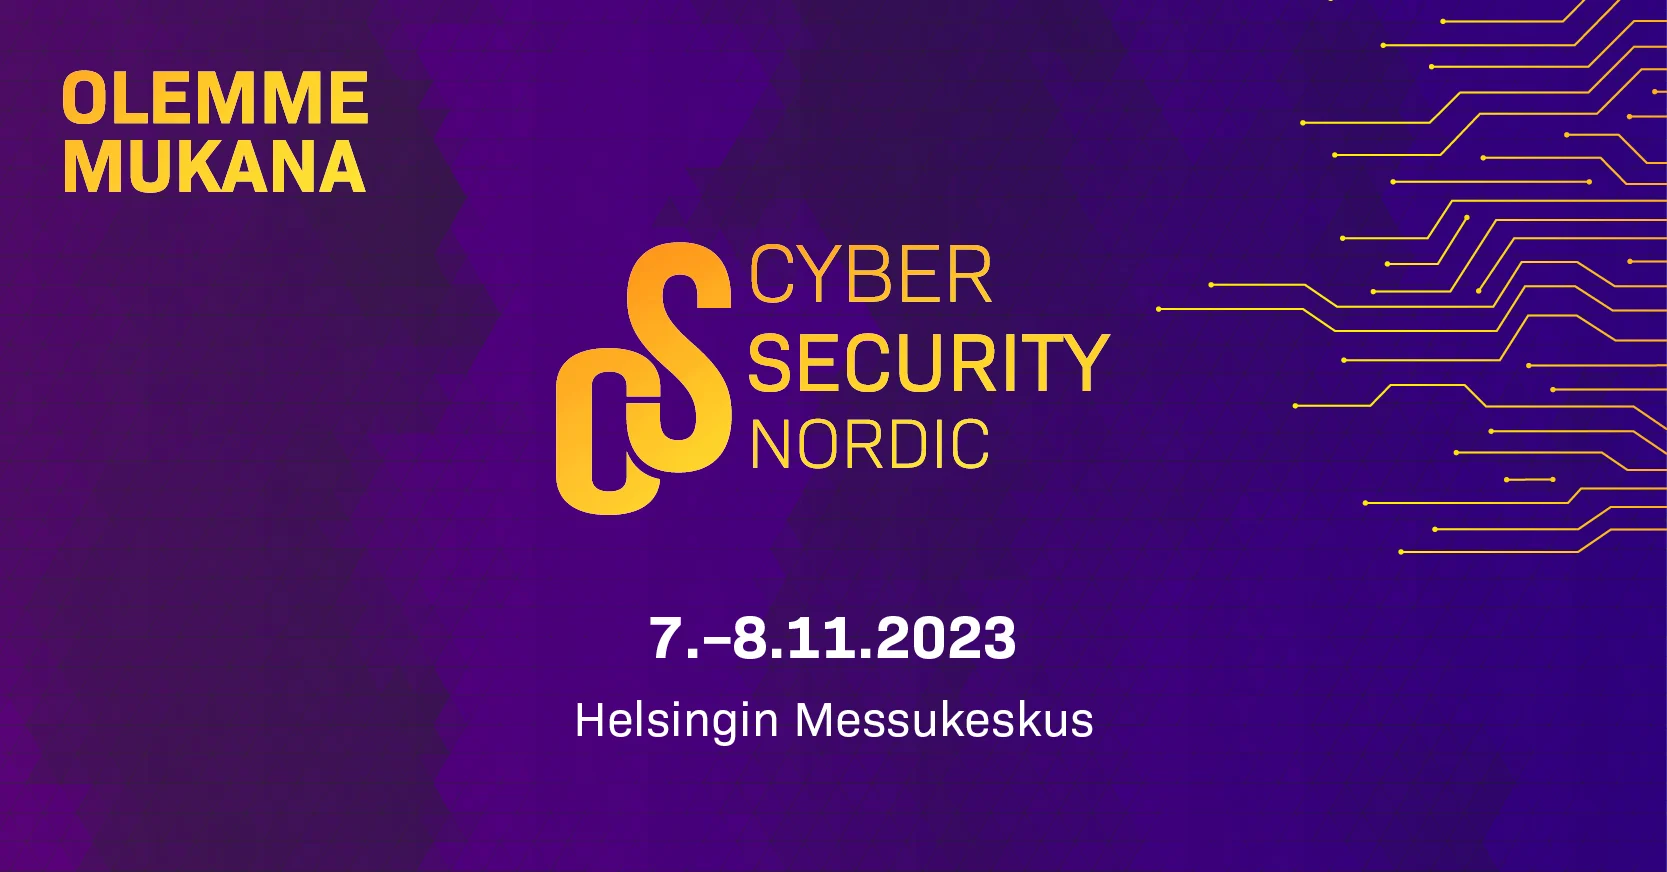 Uudet innovaatiot ja palvelut parantavat kyberturvaa - kattavat kyberturvallisuusratkaisumme esillä Cyber Security Nordic -tapahtumassa